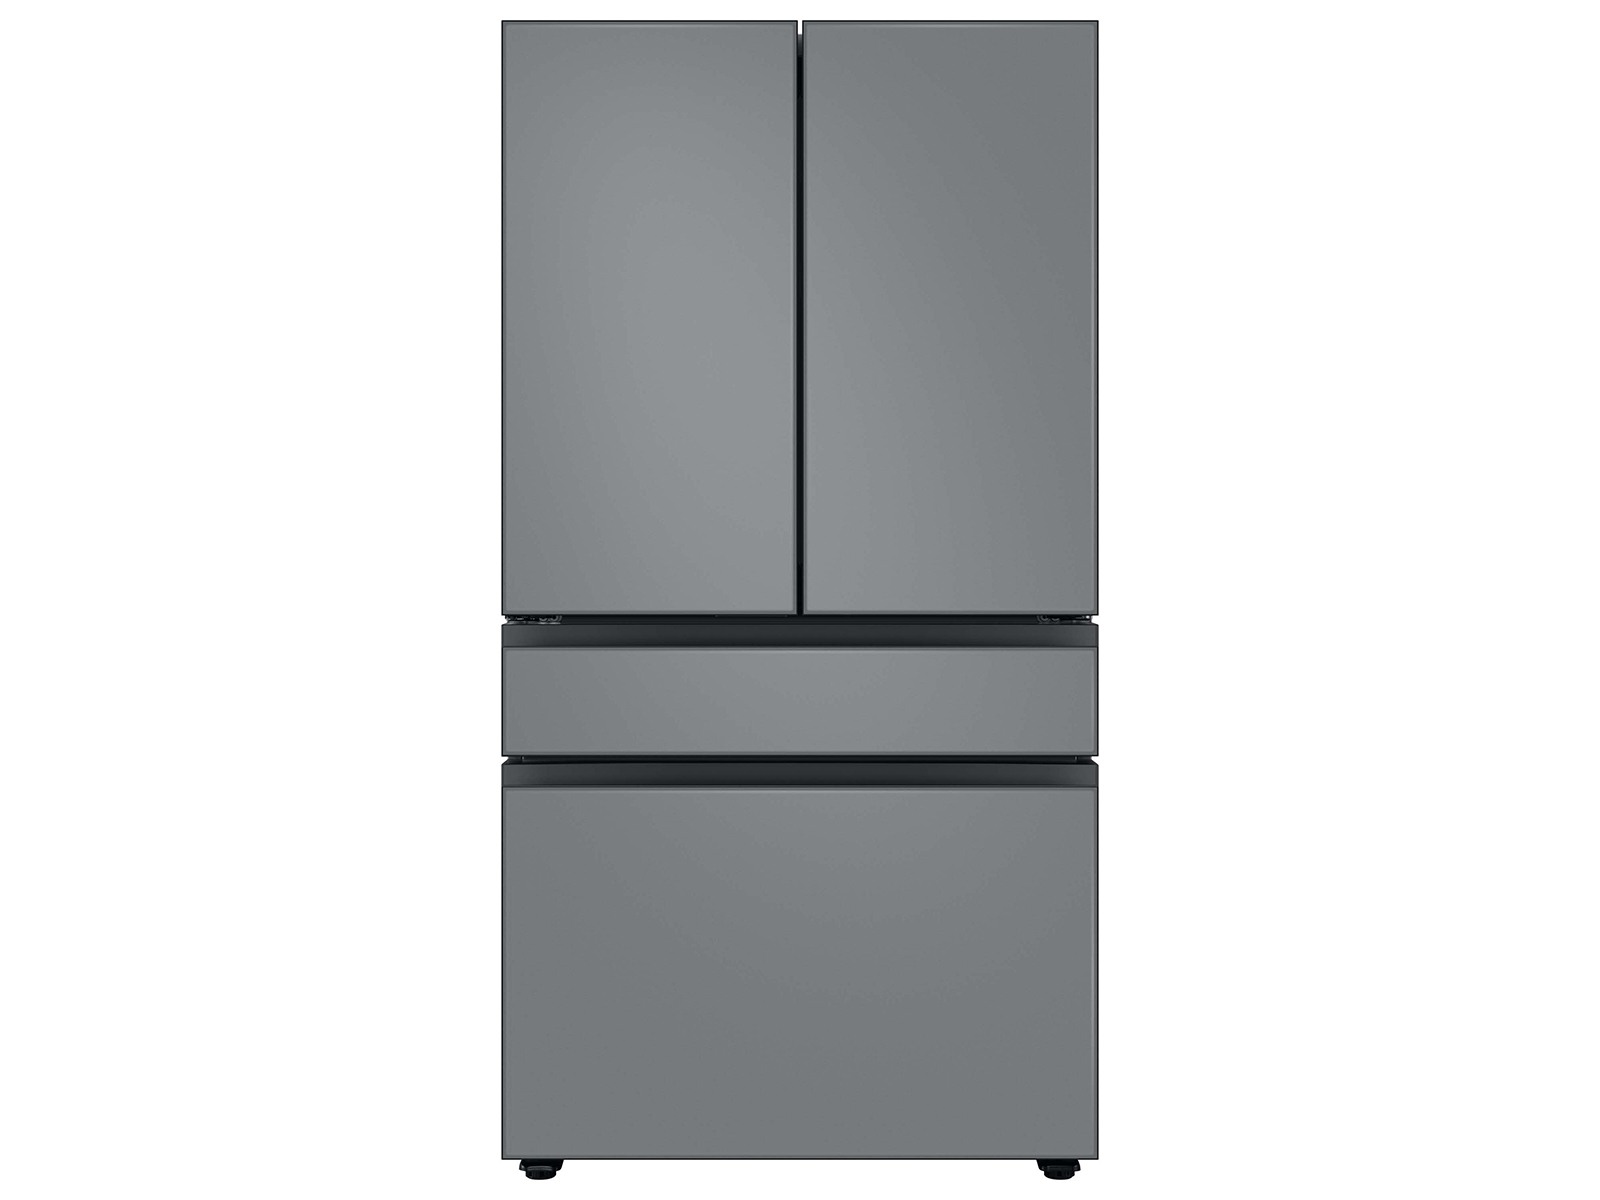 Bespoke 4-Door French Door Refrigerator (23 cu. ft.) with Customizable Door Panel Colors and Beverage Center&trade; in Matte Grey Glass